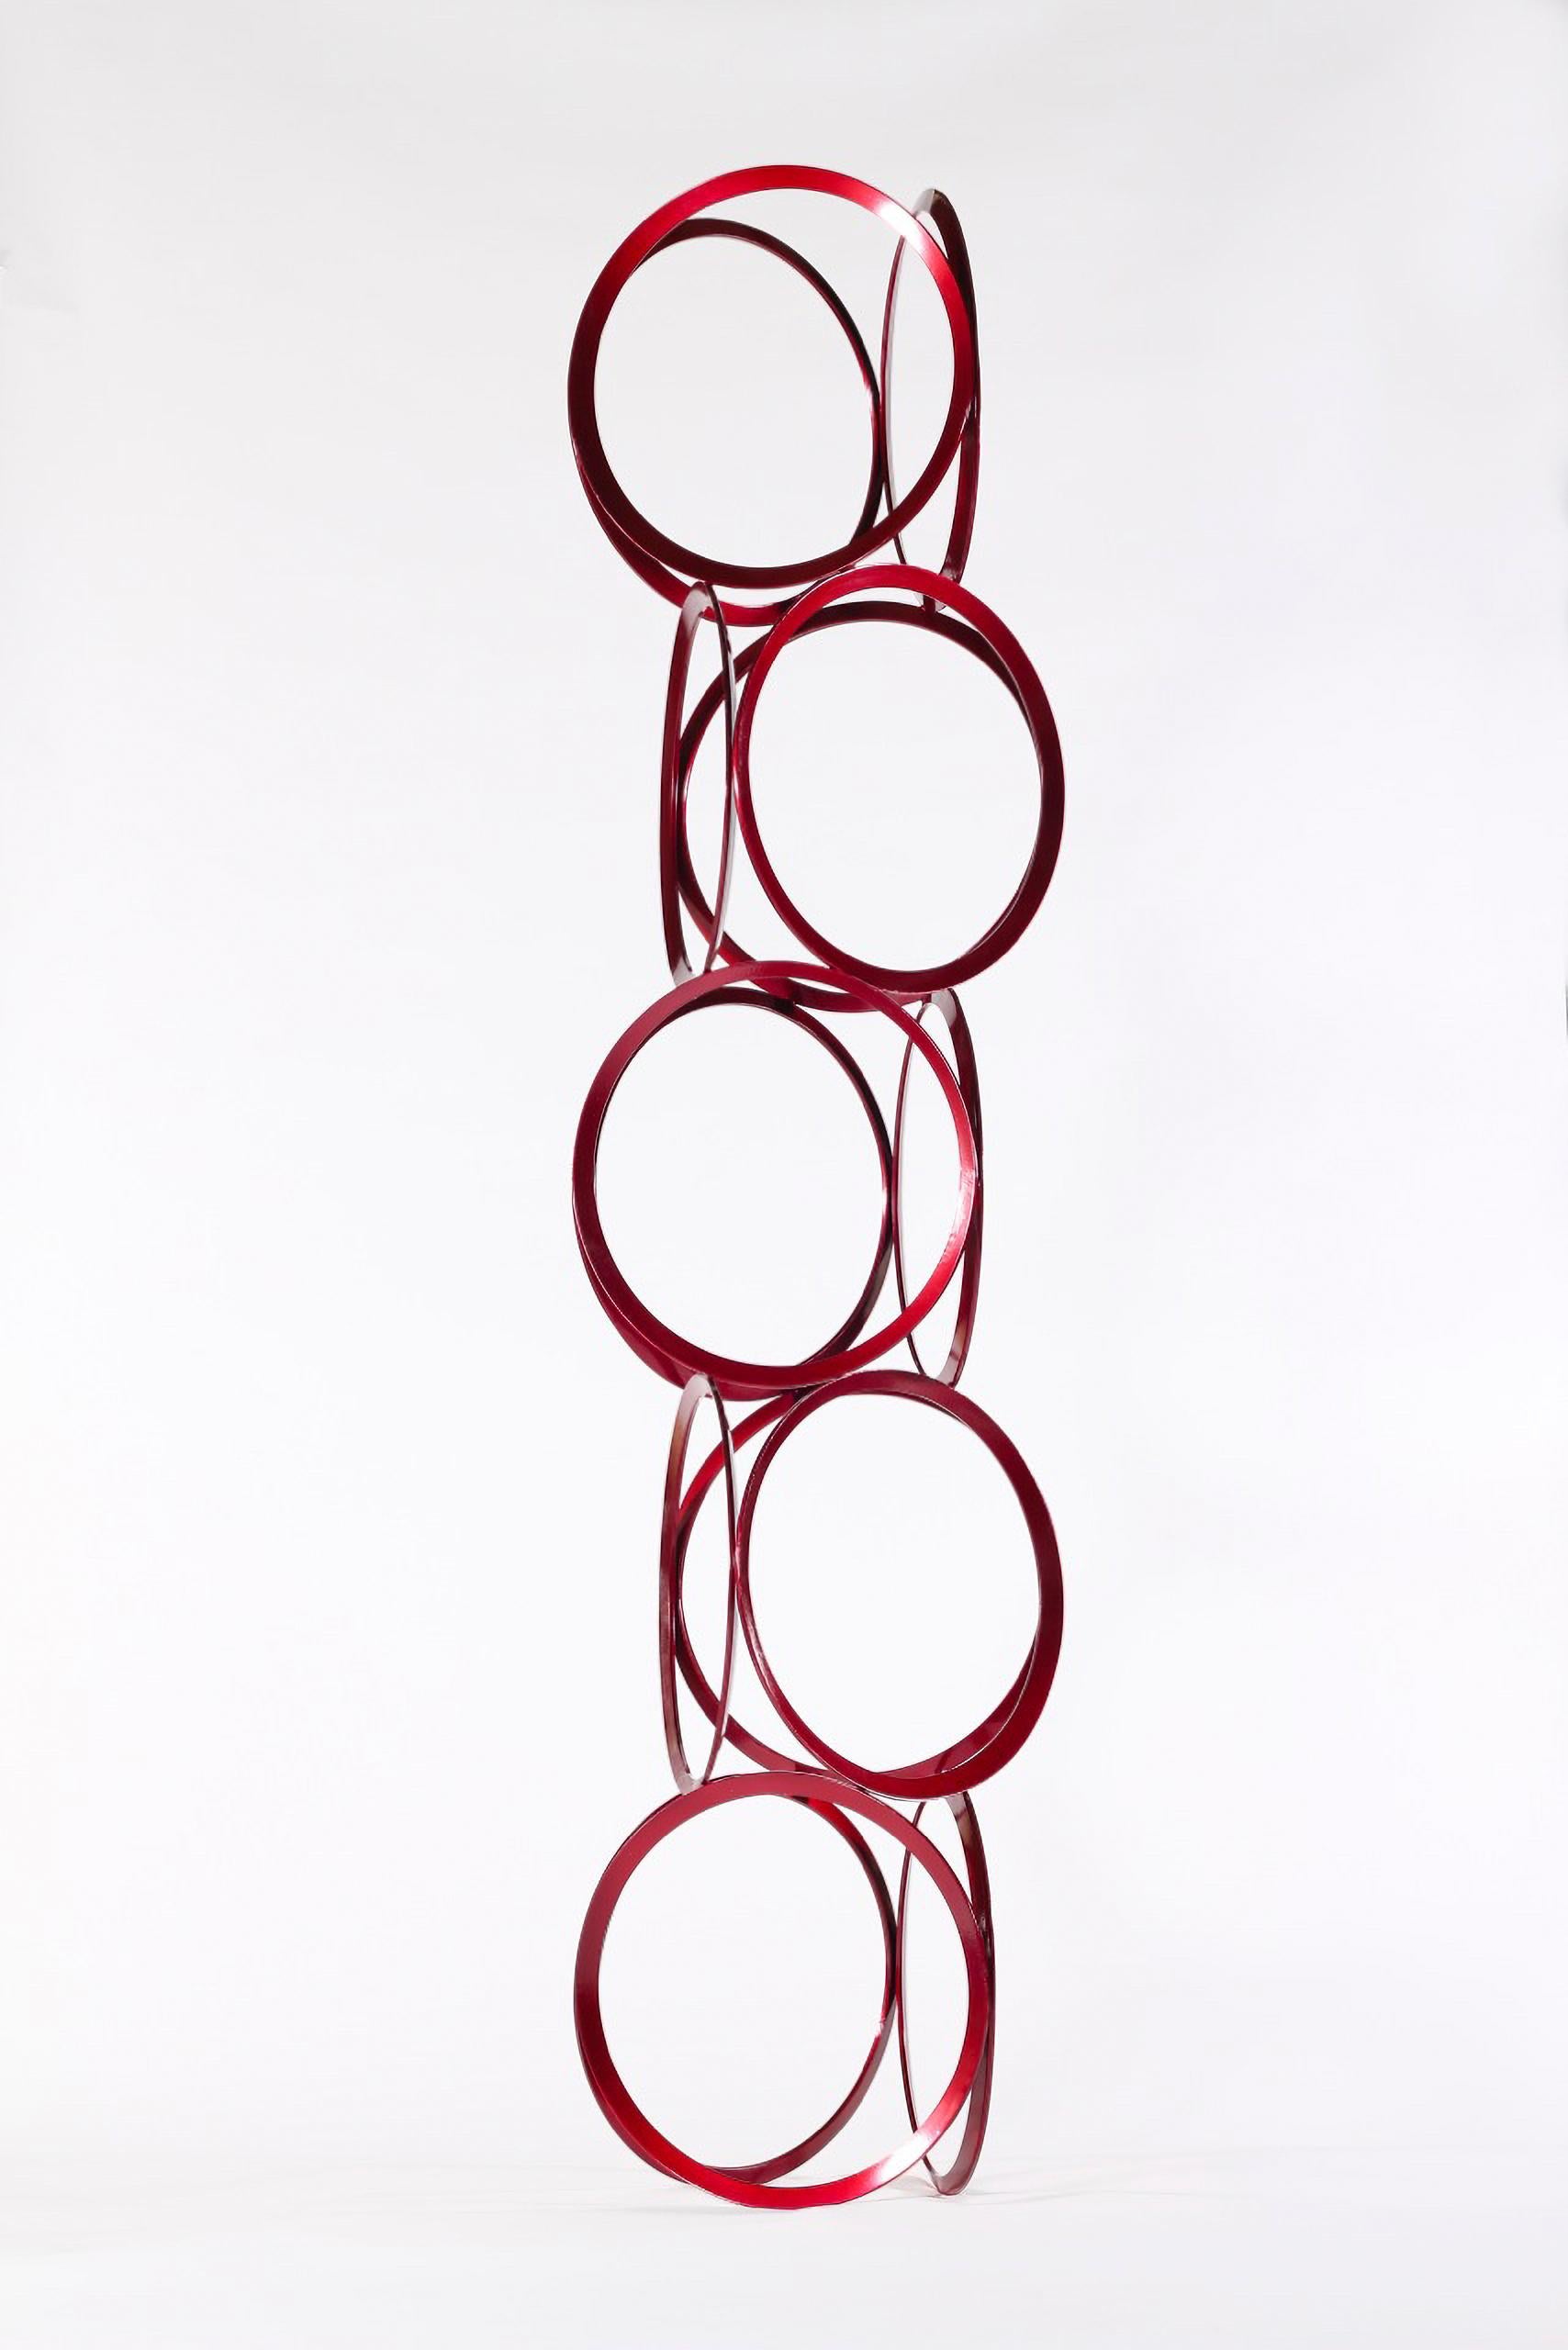 Schlanke Ringe aus abgeflachtem, bonbonrotem Stahl werden vom Bildhauermeister Shayne Dark zu einer eleganten und zugleich verspielten Säule gestapelt. Das Werk mit dem treffenden Titel Drawing in Space (Zeichnung im Raum) erscheint aus